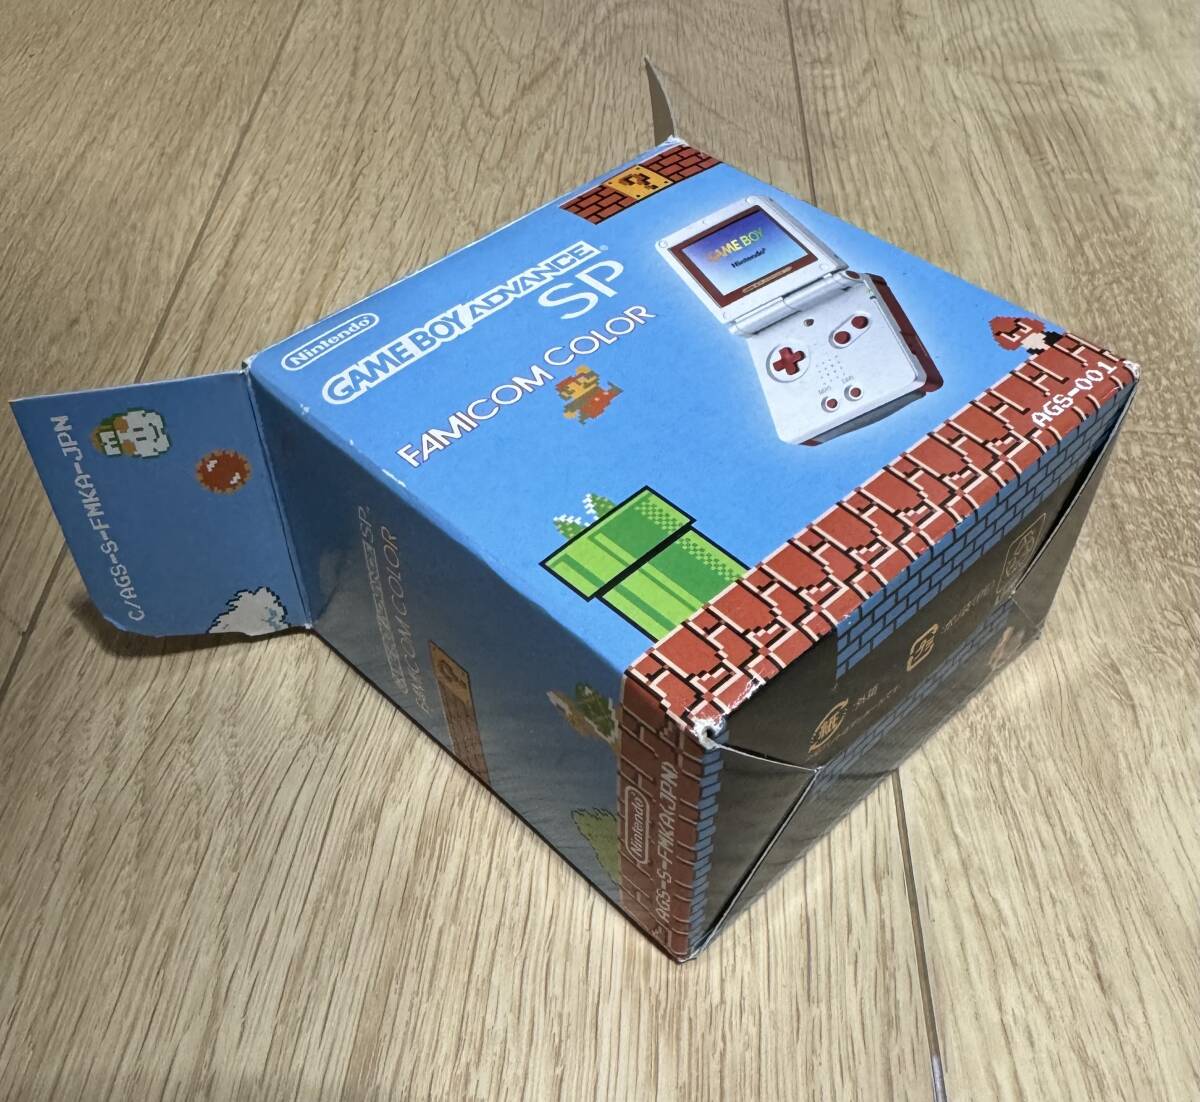 *GBA* Game Boy Advance SP Famicom цвет * Super Mario Brothers есть * коробка инструкция есть * рабочее состояние подтверждено * быстрое решение иметь *